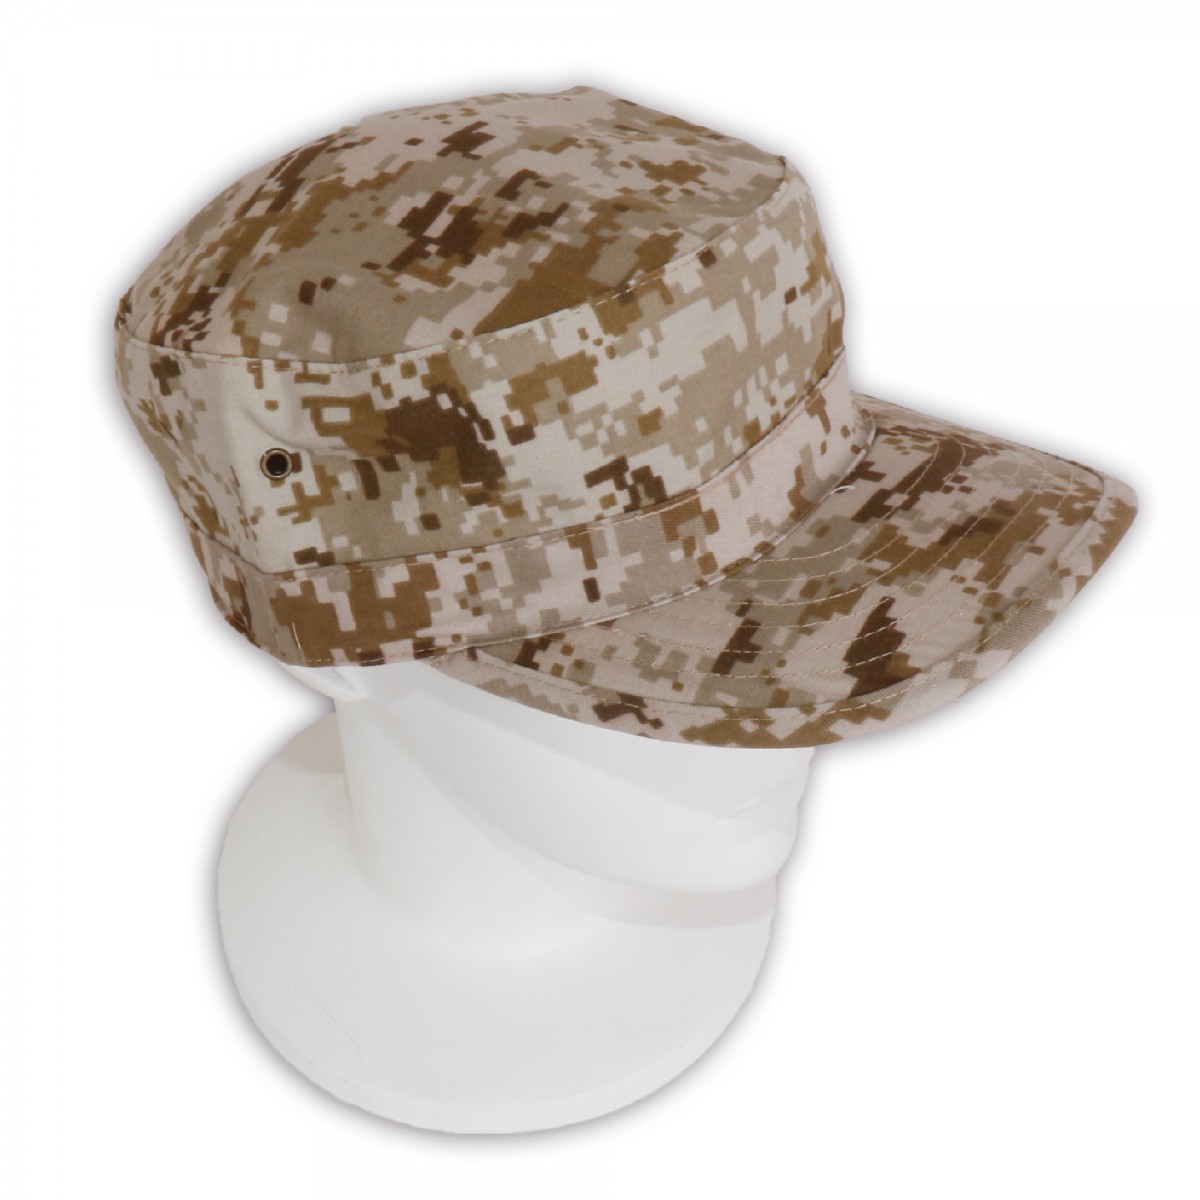 ミリタリーキャップ  パトロールキャップ  フリーサイズ  帽子